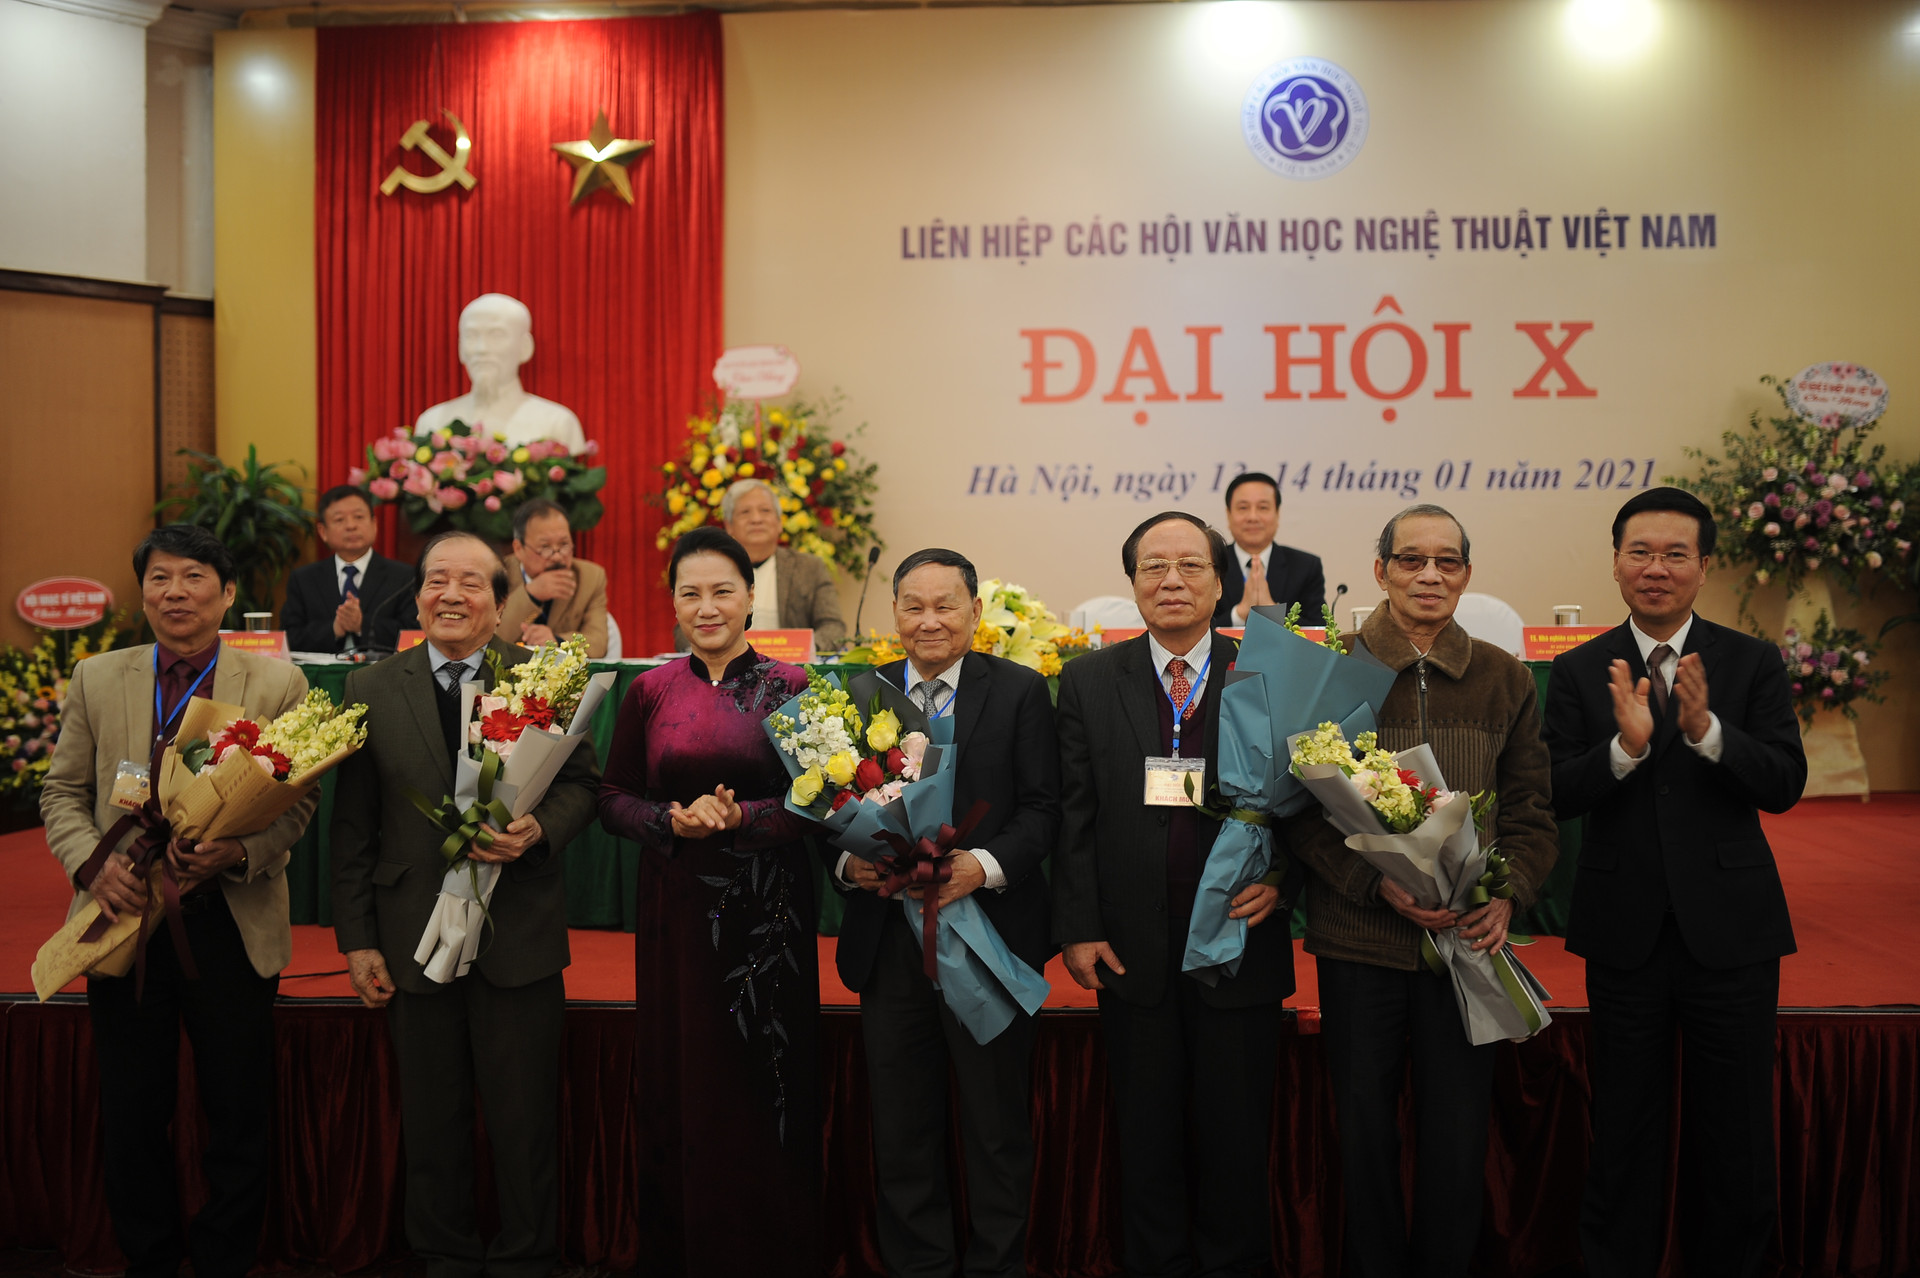 Đại hội Liên hiệp các Hội Văn học Nghệ thuật Việt Nam Thành công tốt đẹp